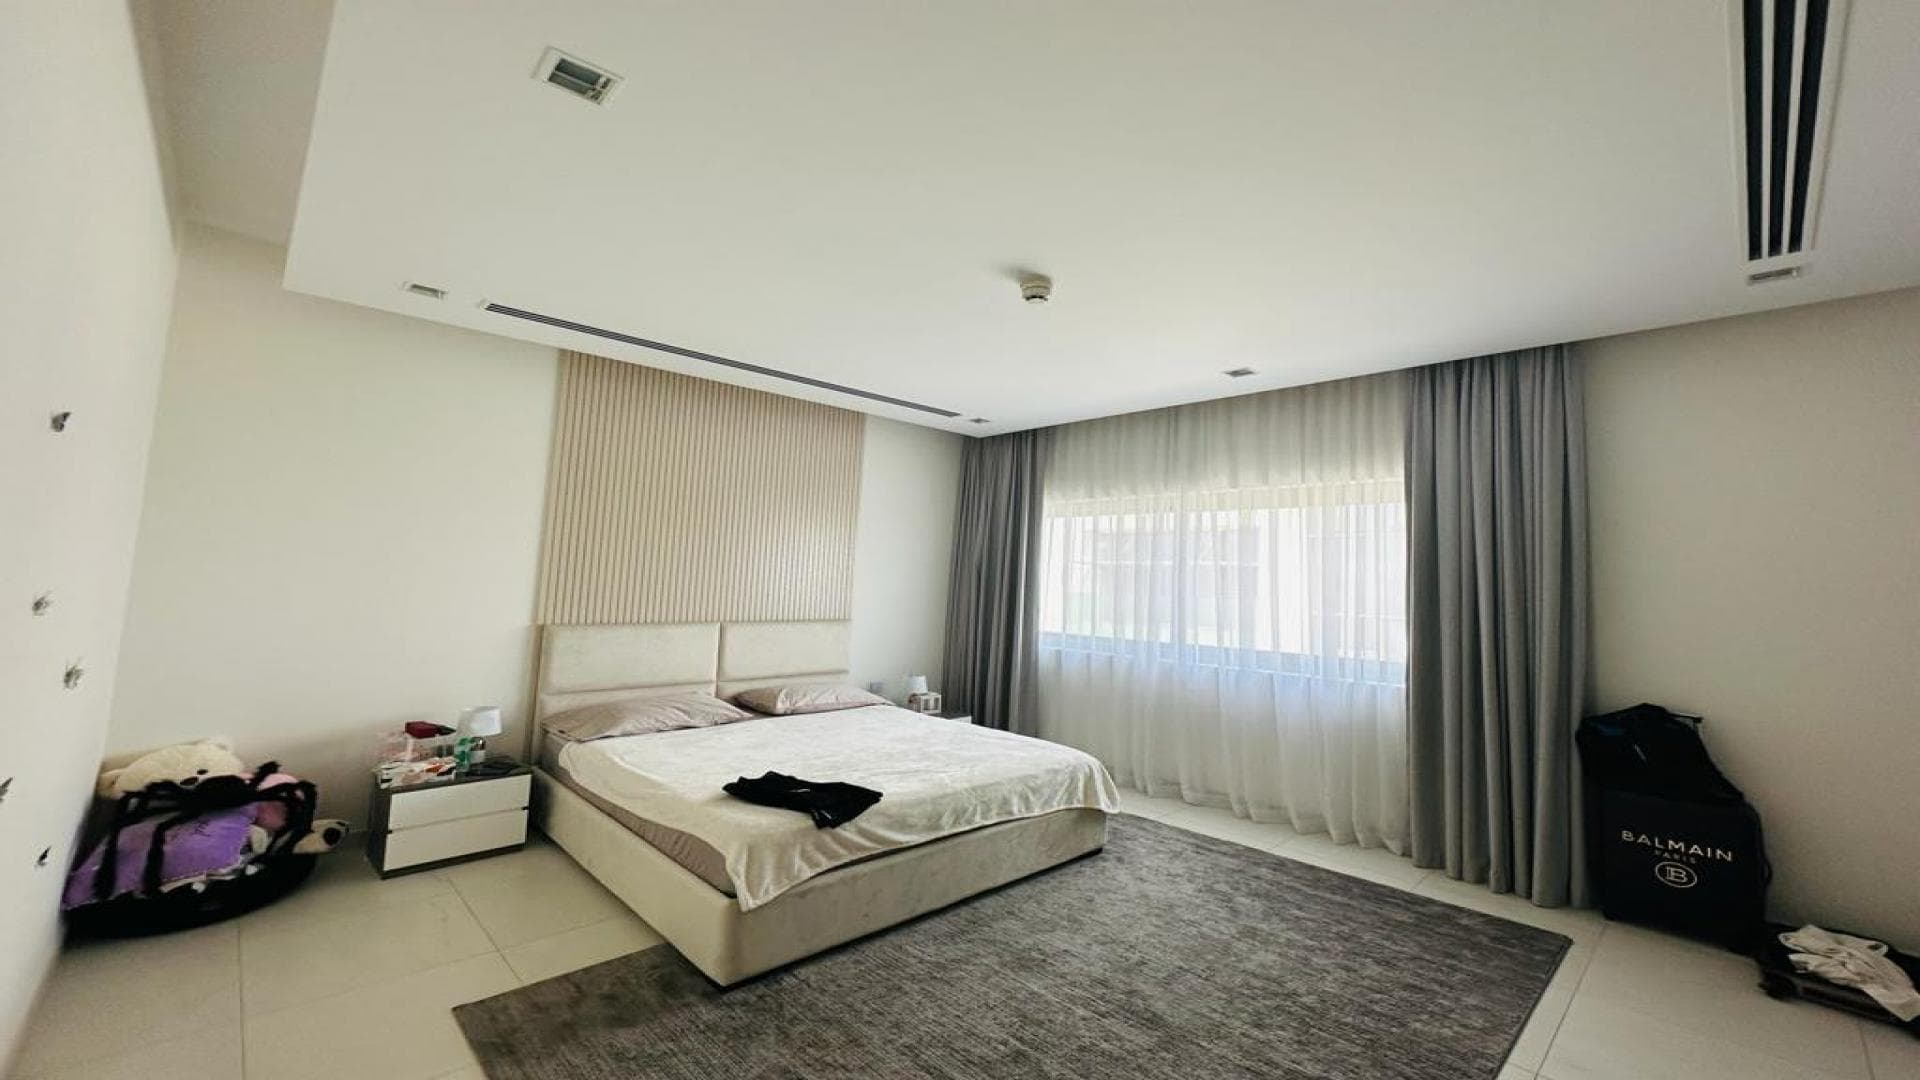 5 Bedroom Villa For Rent  Lp38736 2ac2f77bd5f82800.jpg